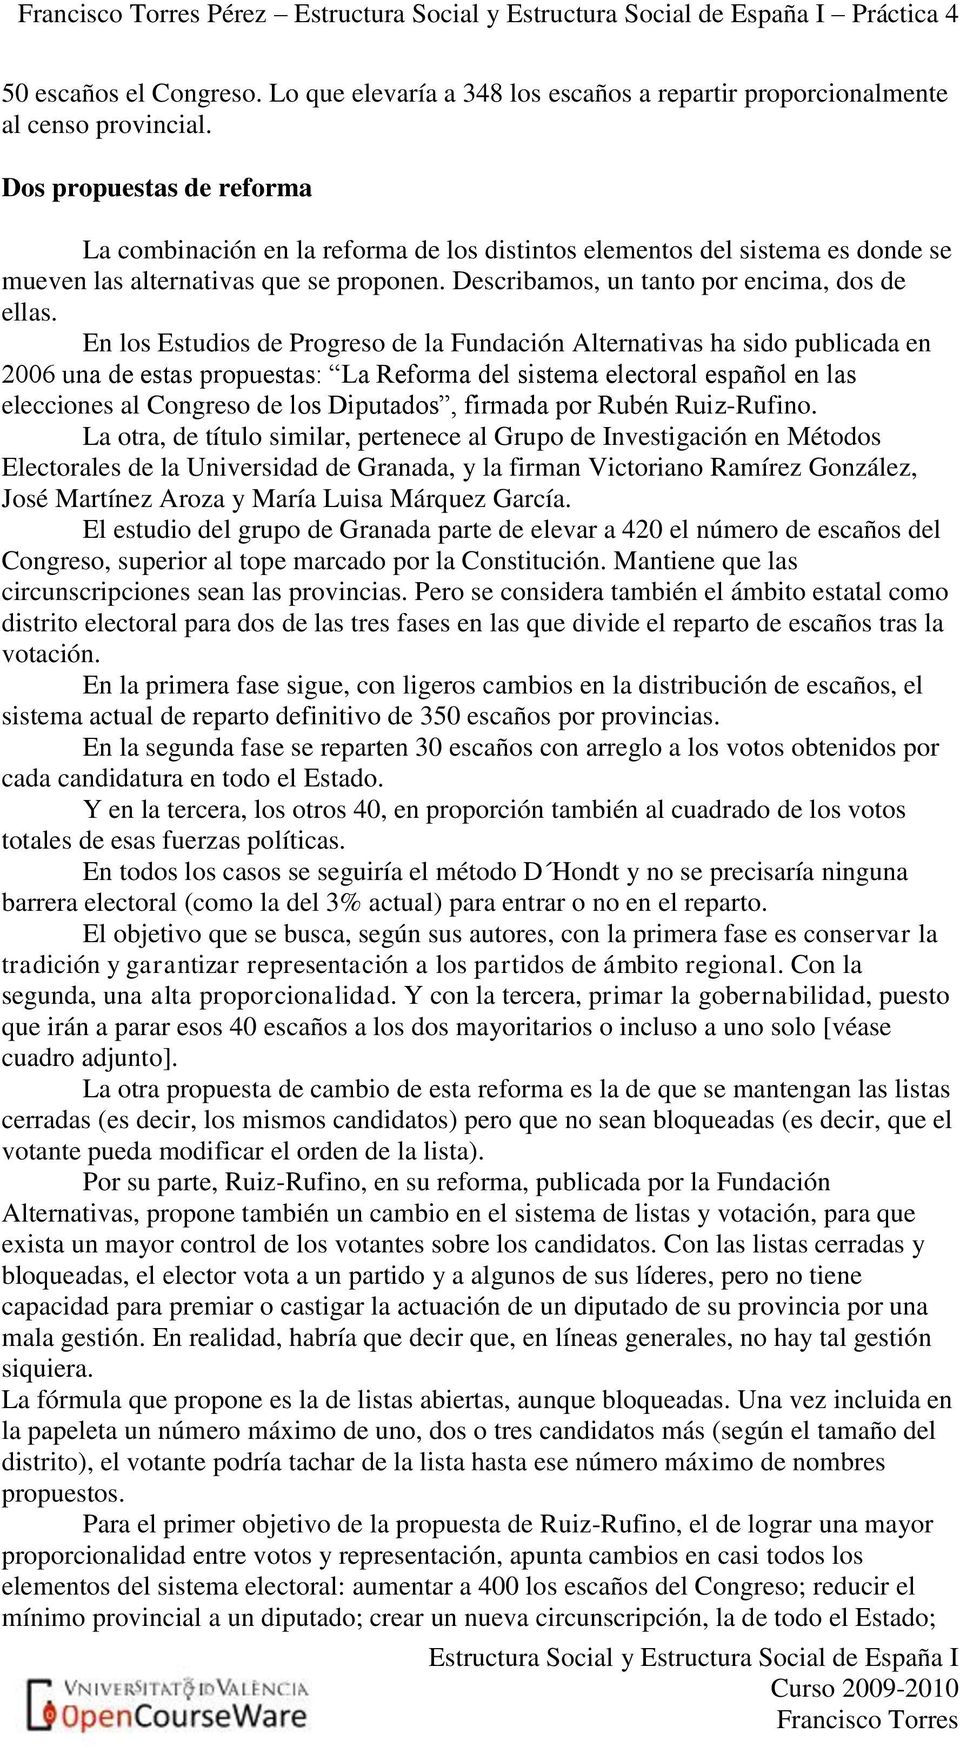 En los Estudios de Progreso de la Fundación Alternativas ha sido publicada en 2006 una de estas propuestas: La Reforma del sistema electoral español en las elecciones al Congreso de los Diputados,